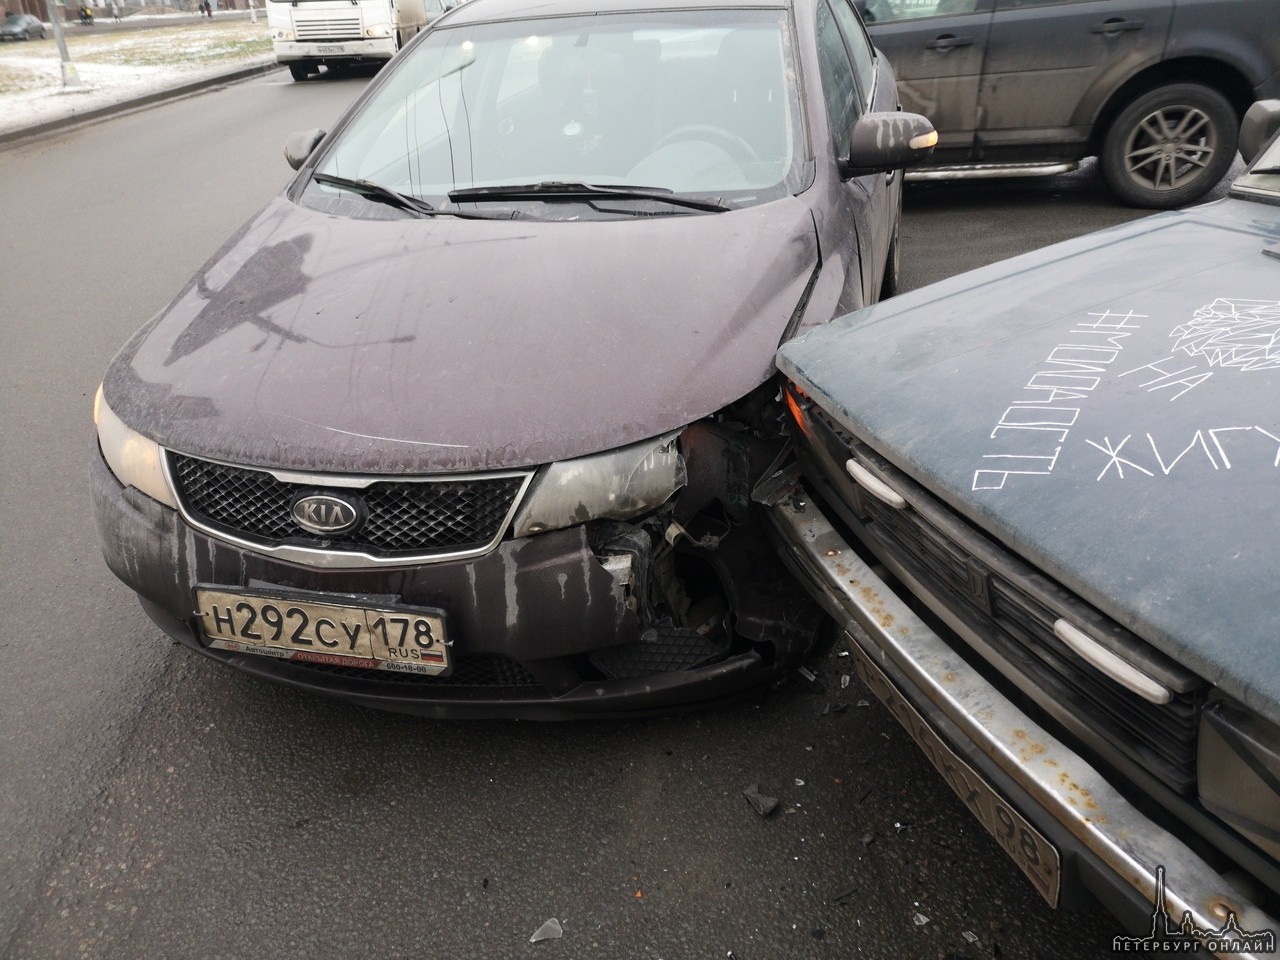 30 января примерно в 14:50 на перекрёстке проспекта Большевиков и Антонова-Овсиенко произошло ДТП. В...